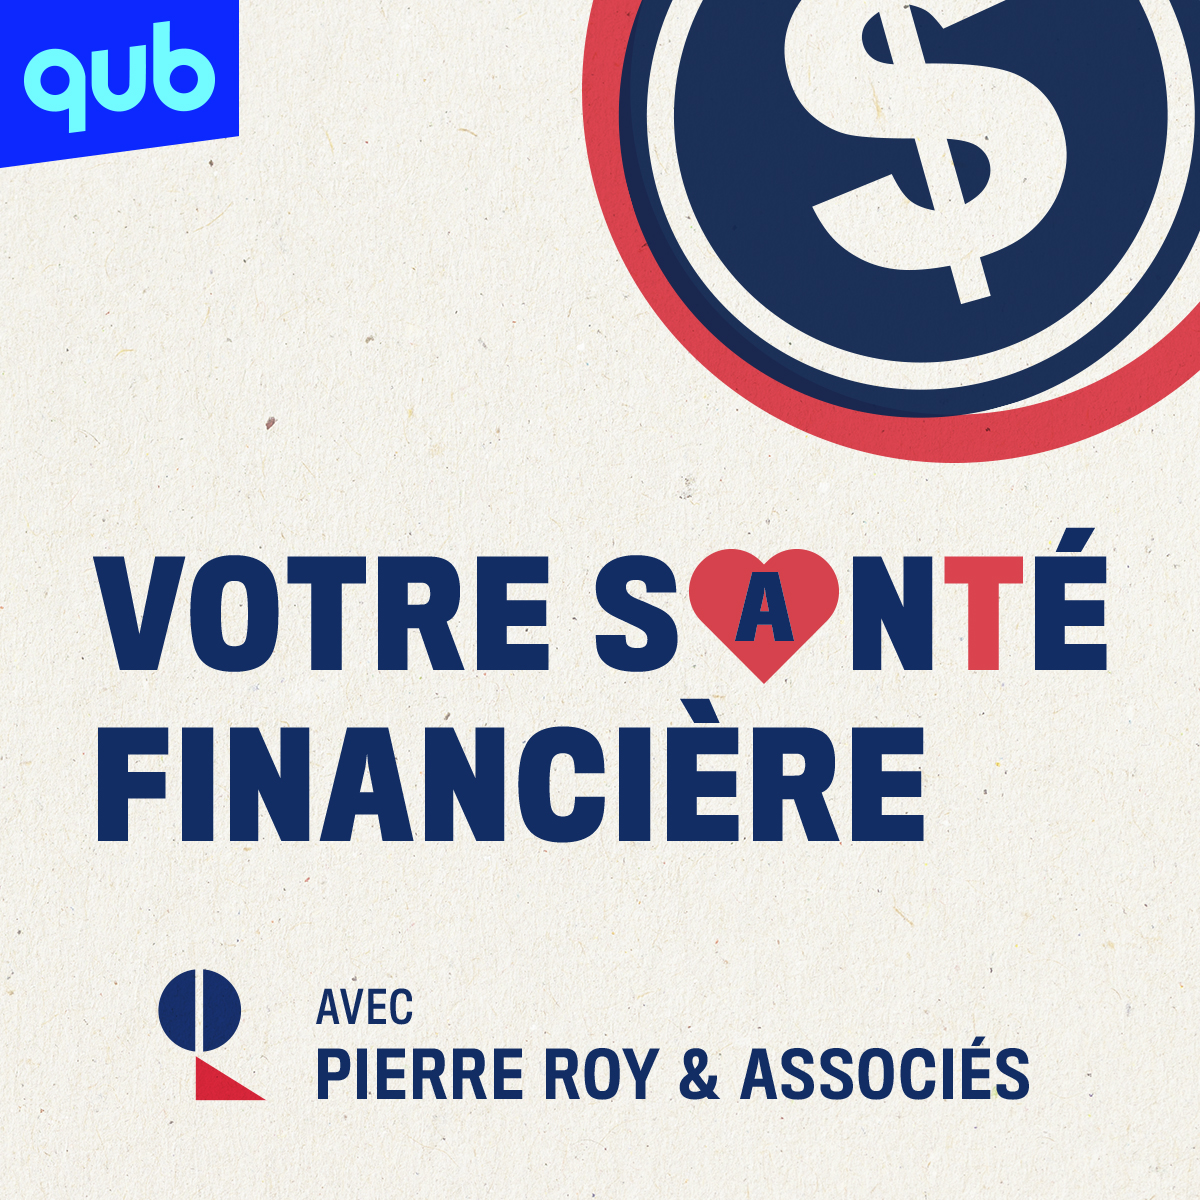 Votre santé financière avec Pierre Roy & Associés